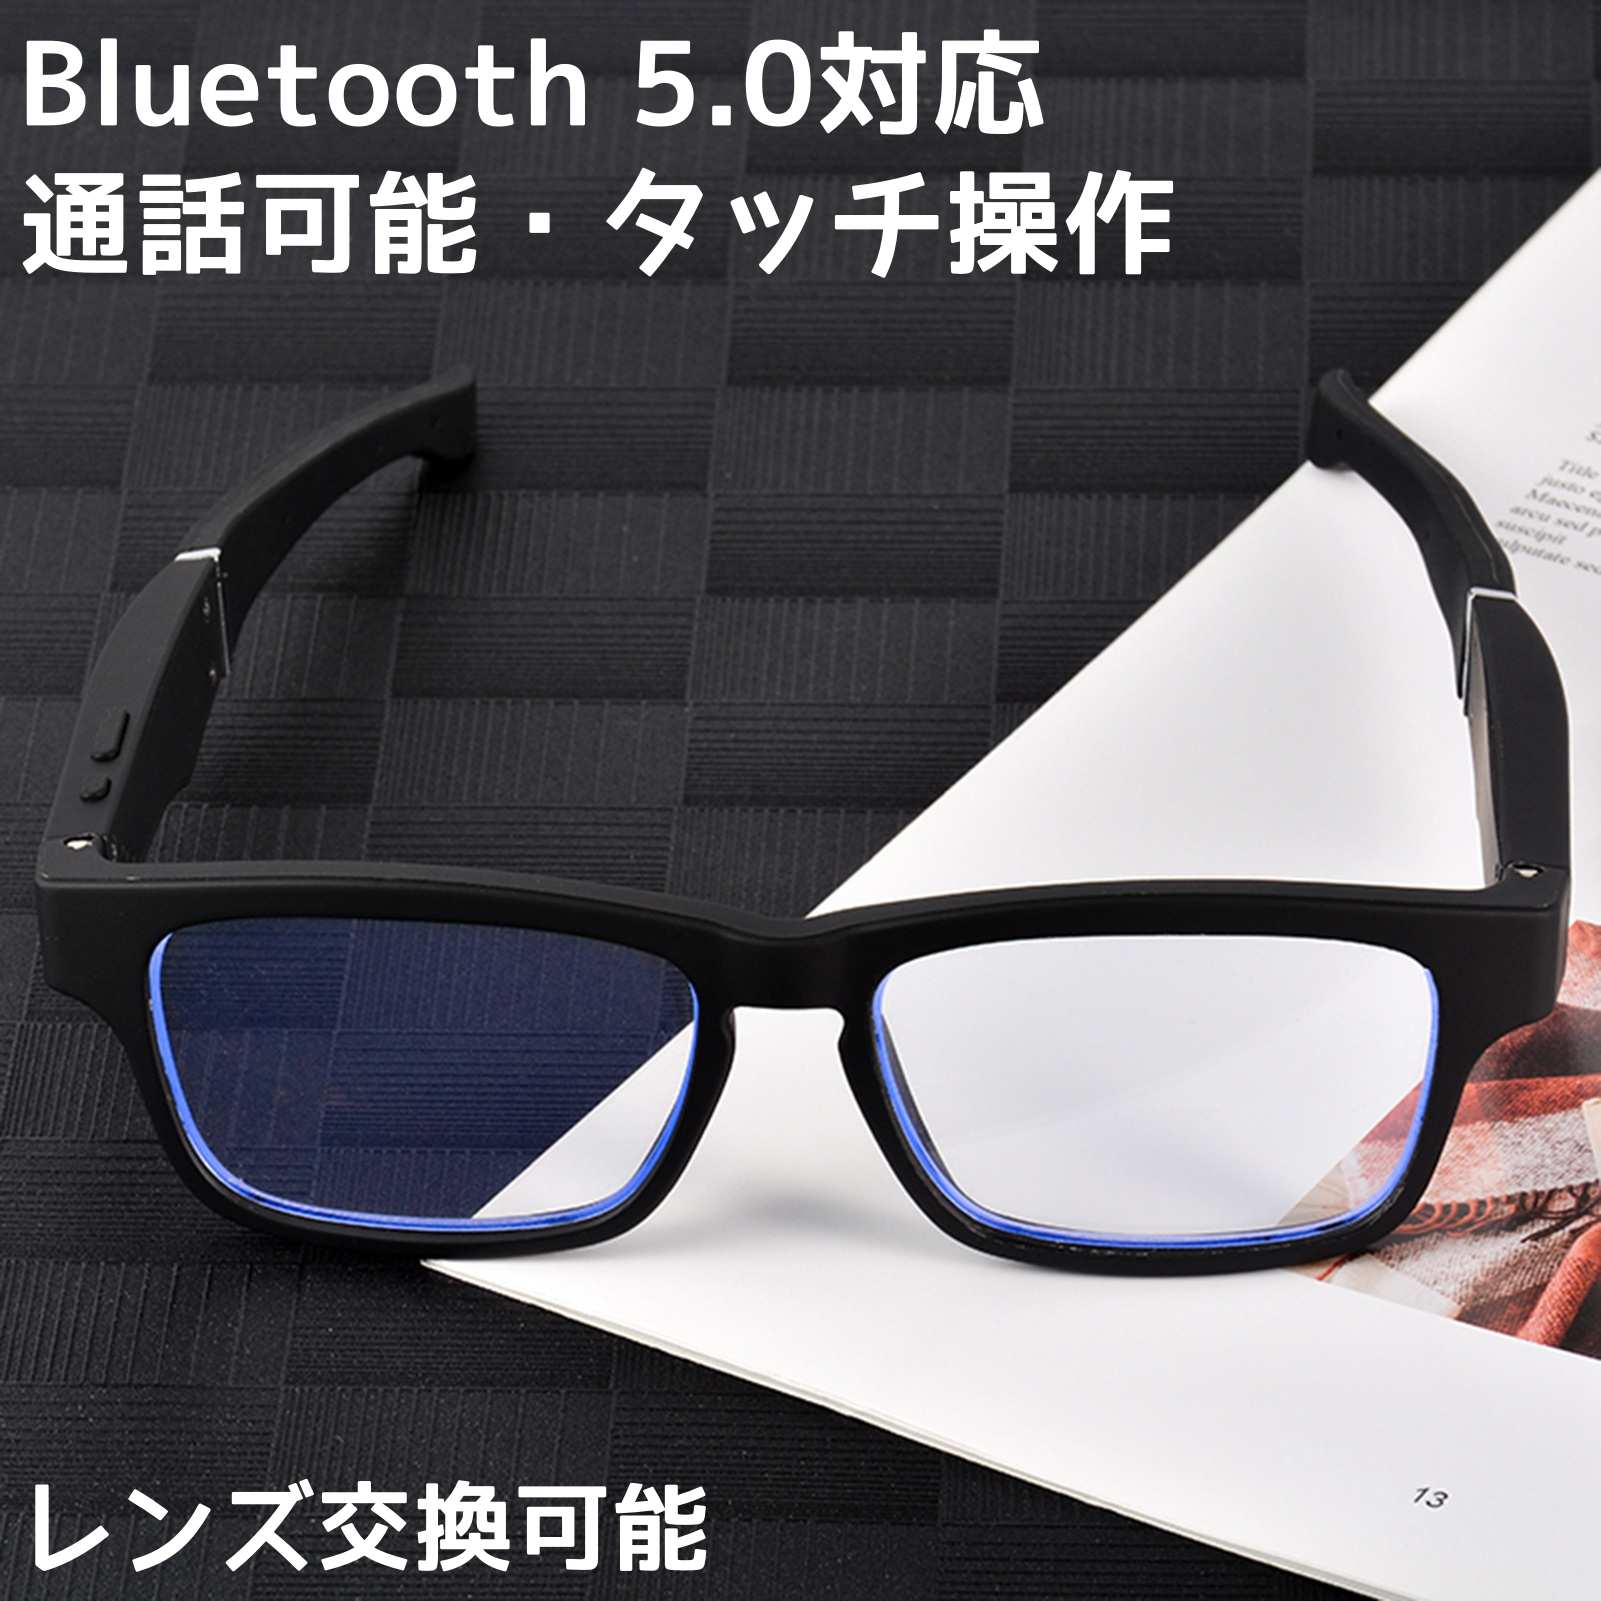 スマートグラス　Bluetooth　メガネ　Bluetoothサングラス　ワイヤレスイヤホン　ワイヤレスメガネ　通話可能　イヤホン　マイク内蔵　レンズ交換可能　軽量　防水防汗　高音質　偏光レンズ　ブルーライトカットレンズ　ファッション眼鏡